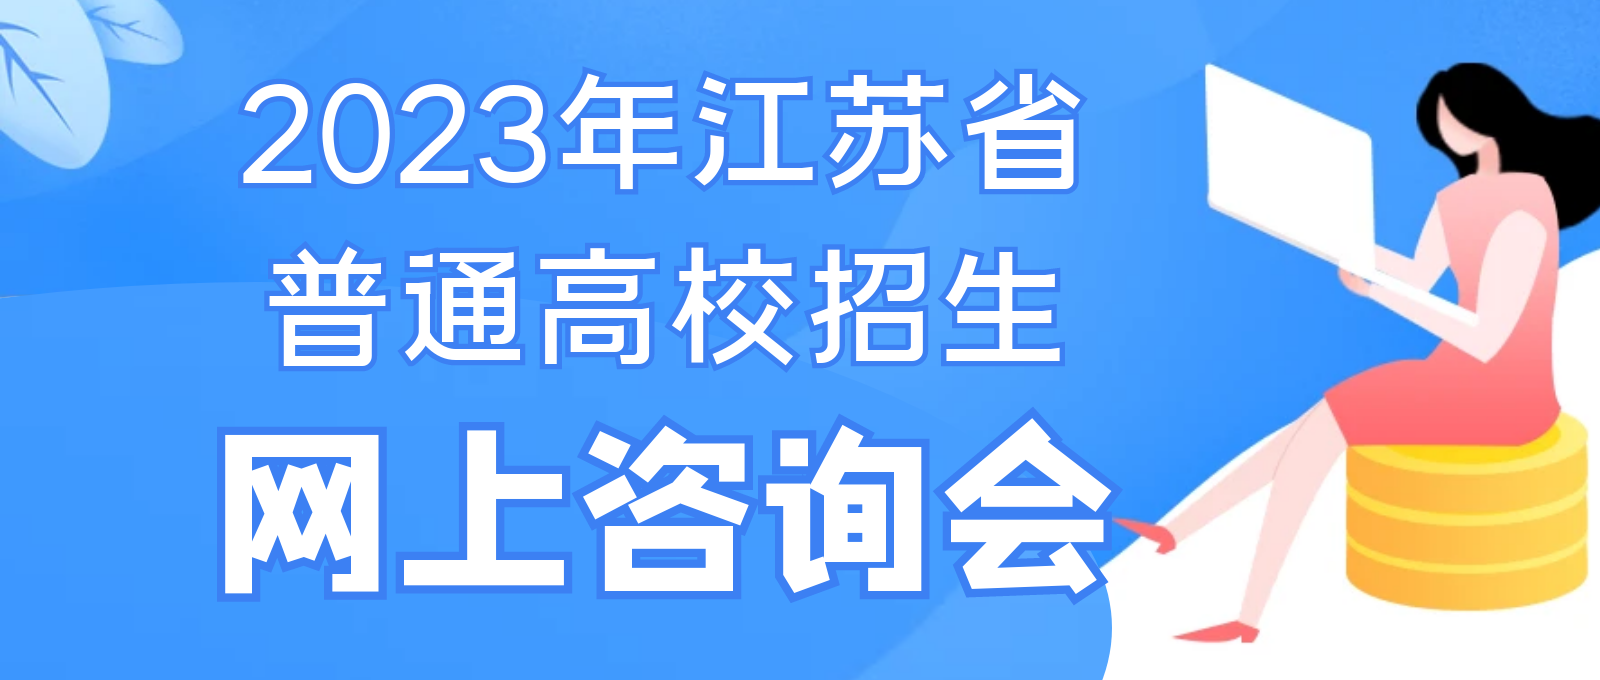 2023年江苏省普通高校招生网上咨询会